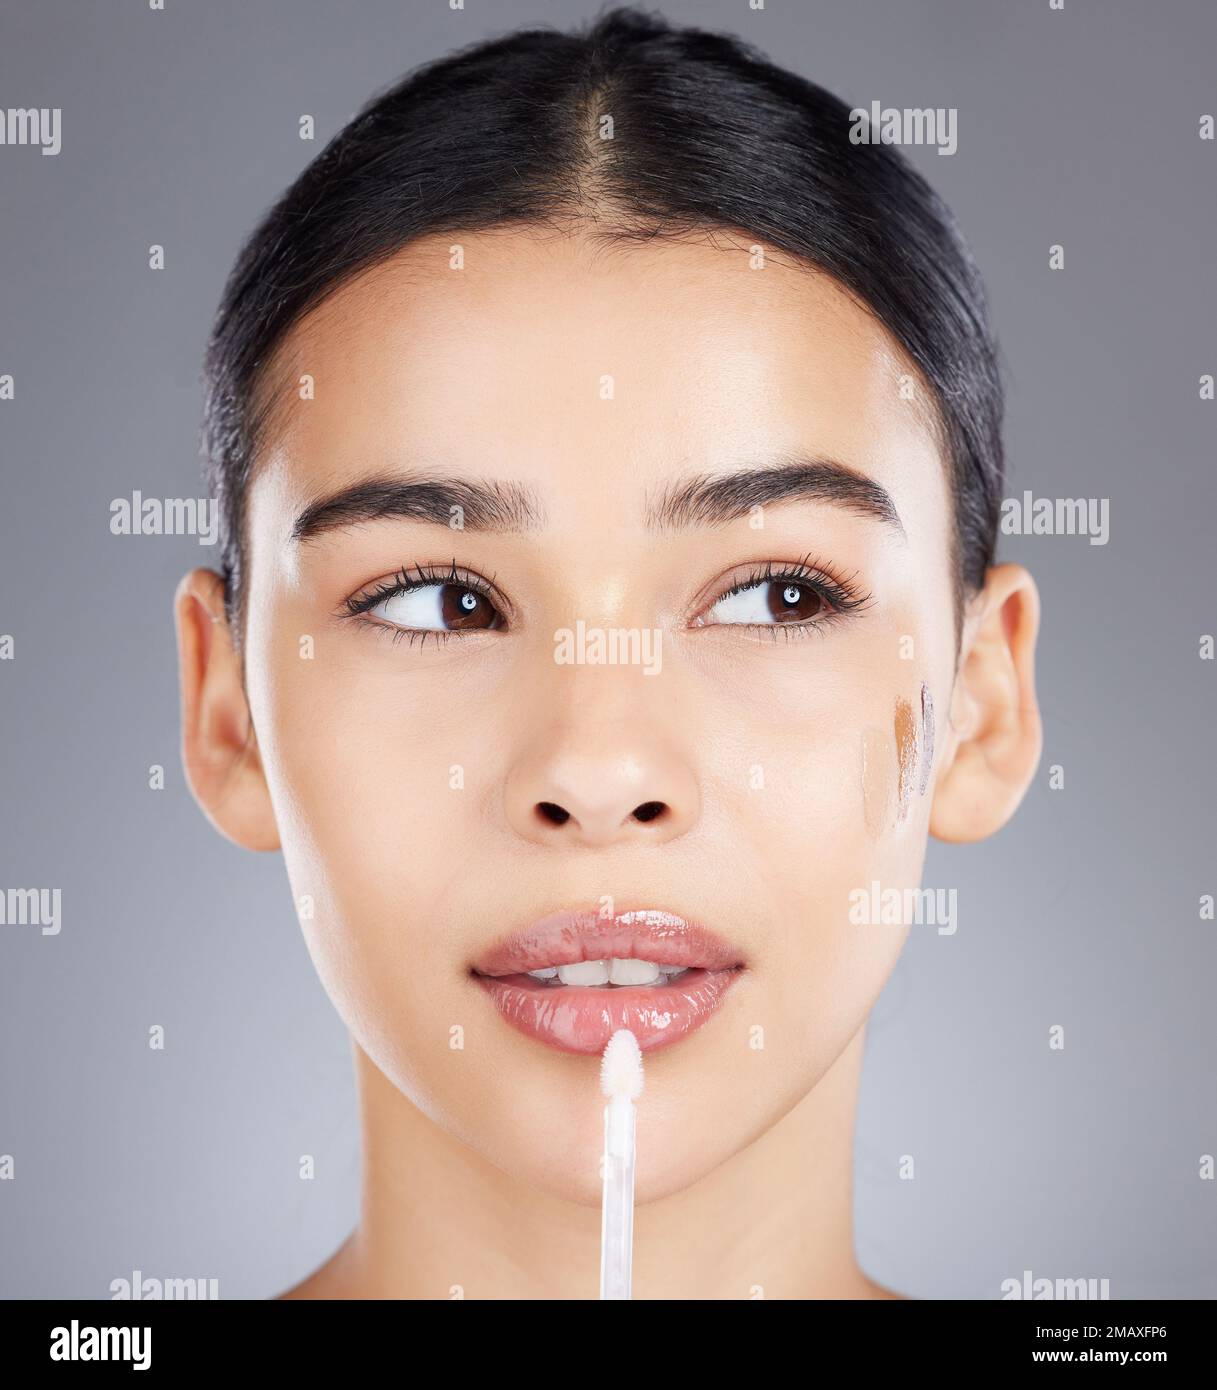 Frau, Lipgloss und Gesichts-Make-up isoliert auf grauem Hintergrund für Schönheit, Glanz oder Kosmetik. Wunderschönes weibliches Modell, das glänzt oder glänzt Stockfoto